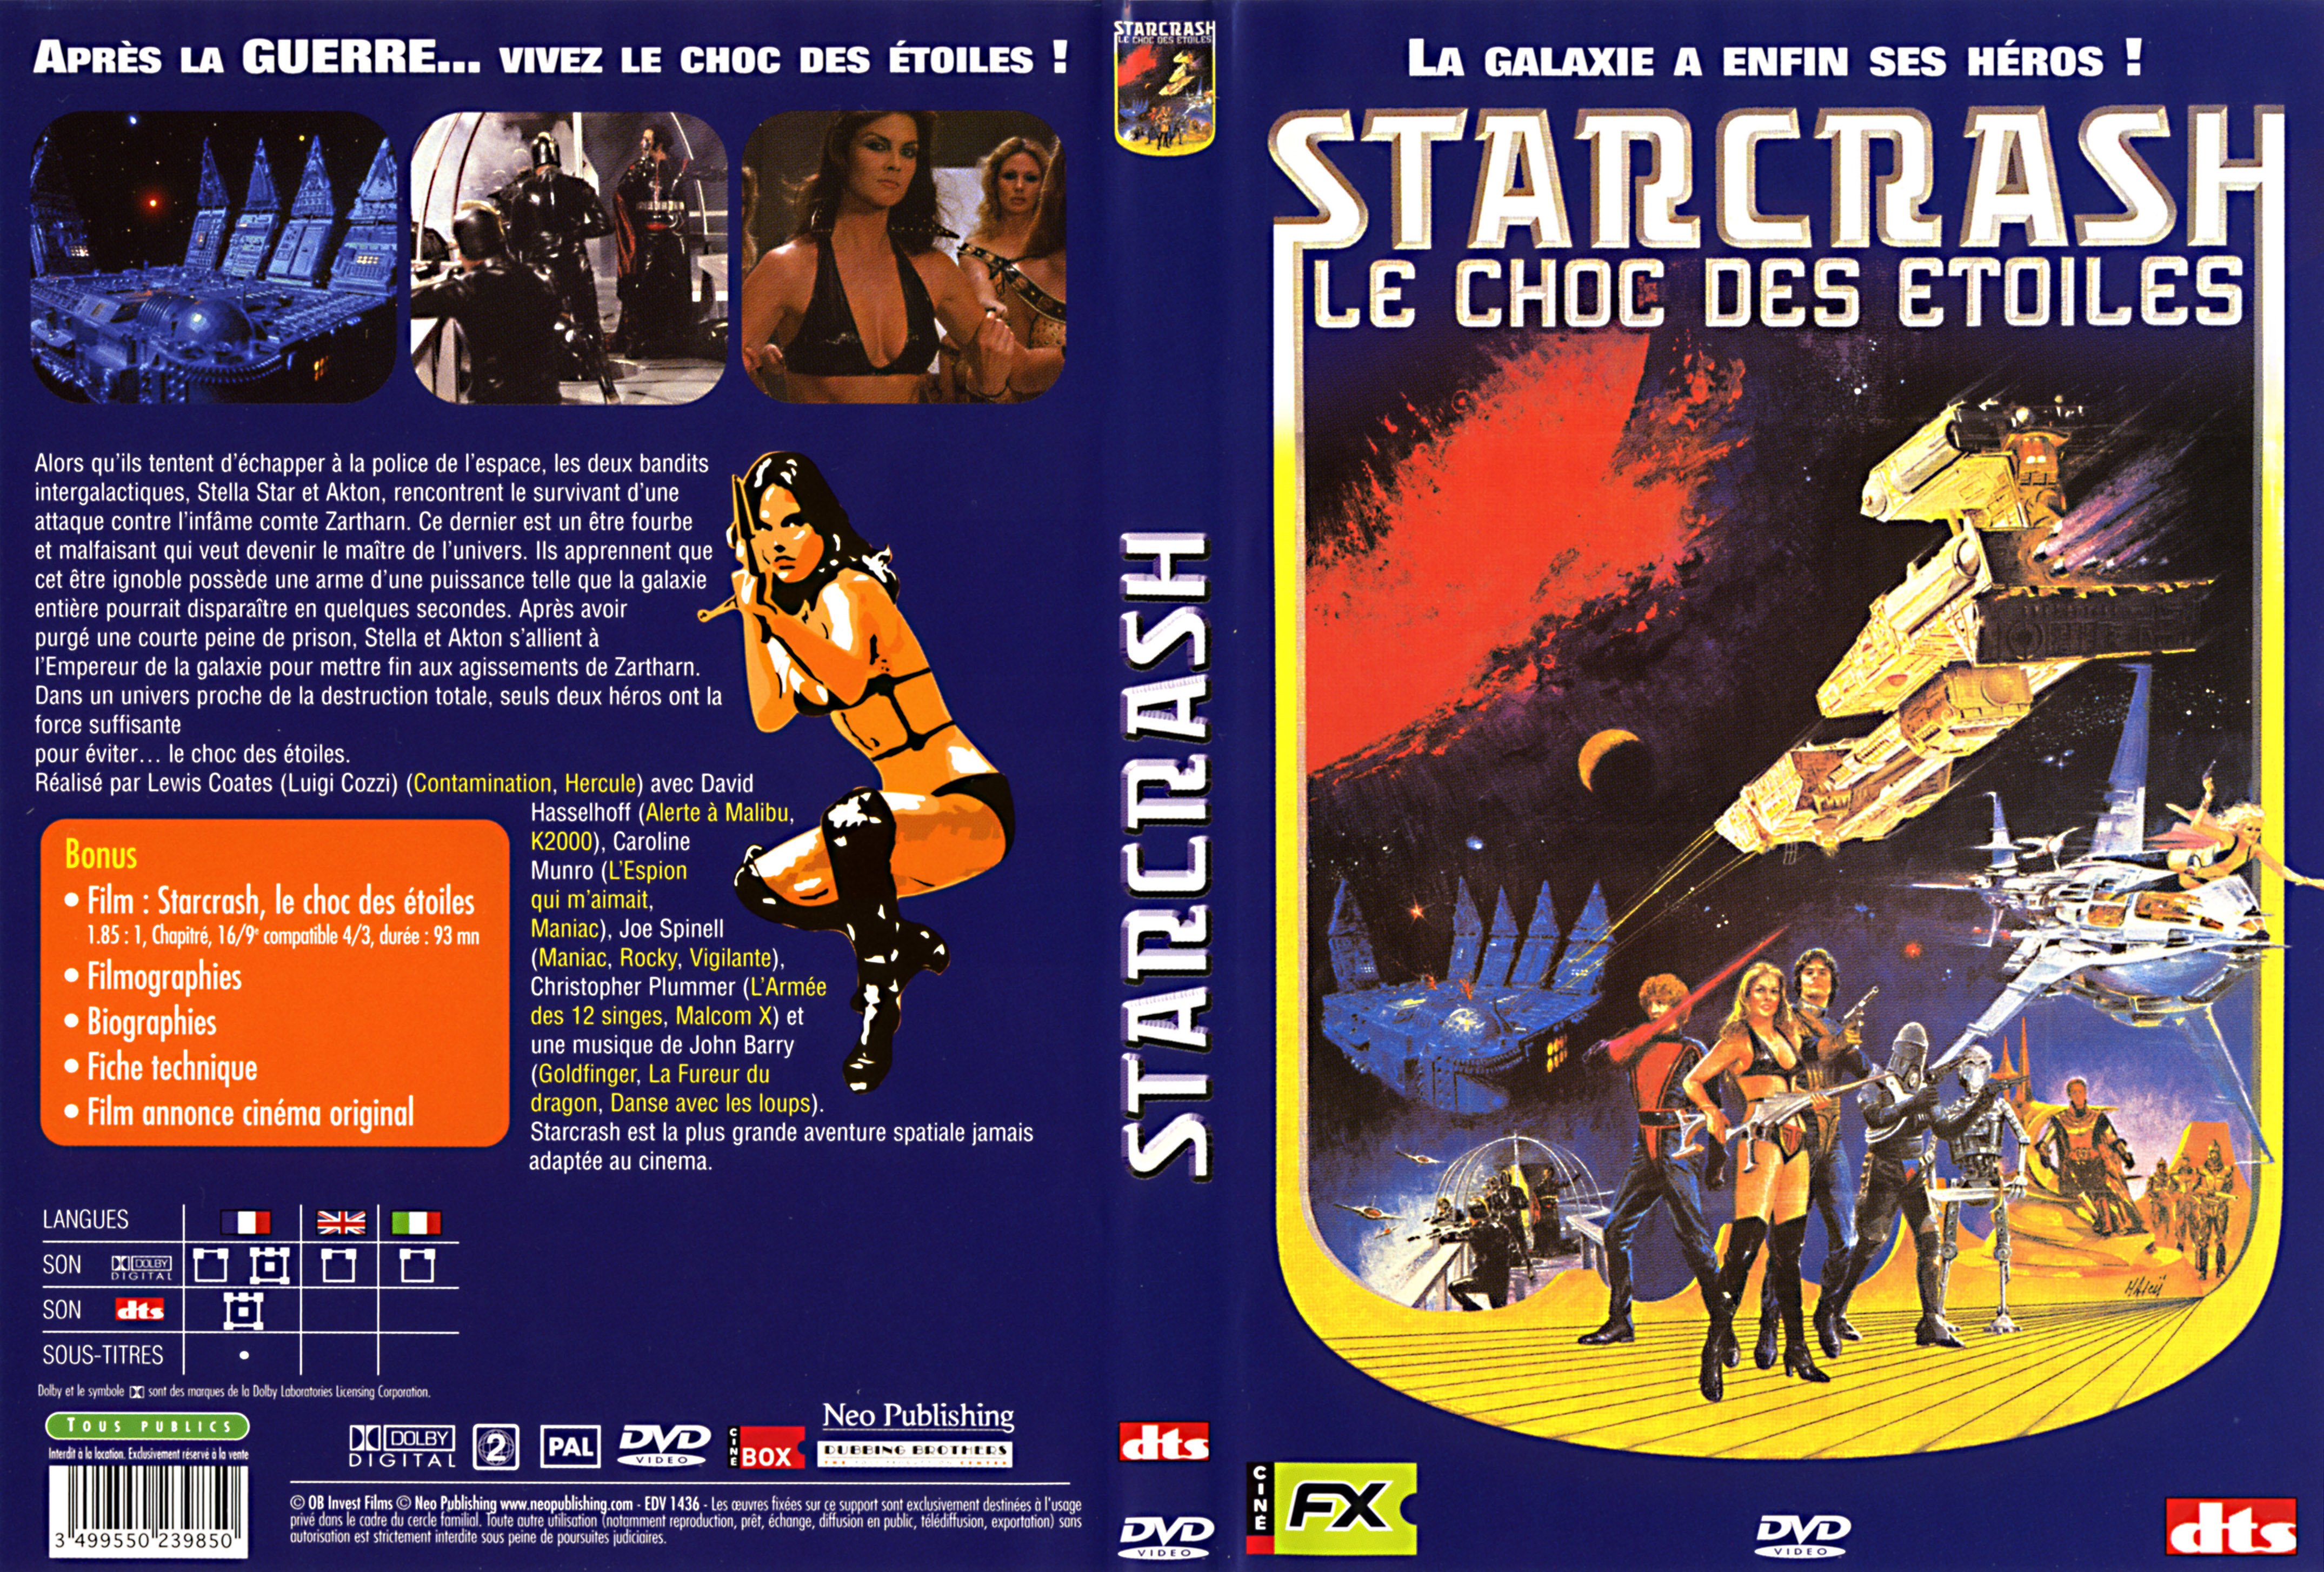 Jaquette DVD Starcrash